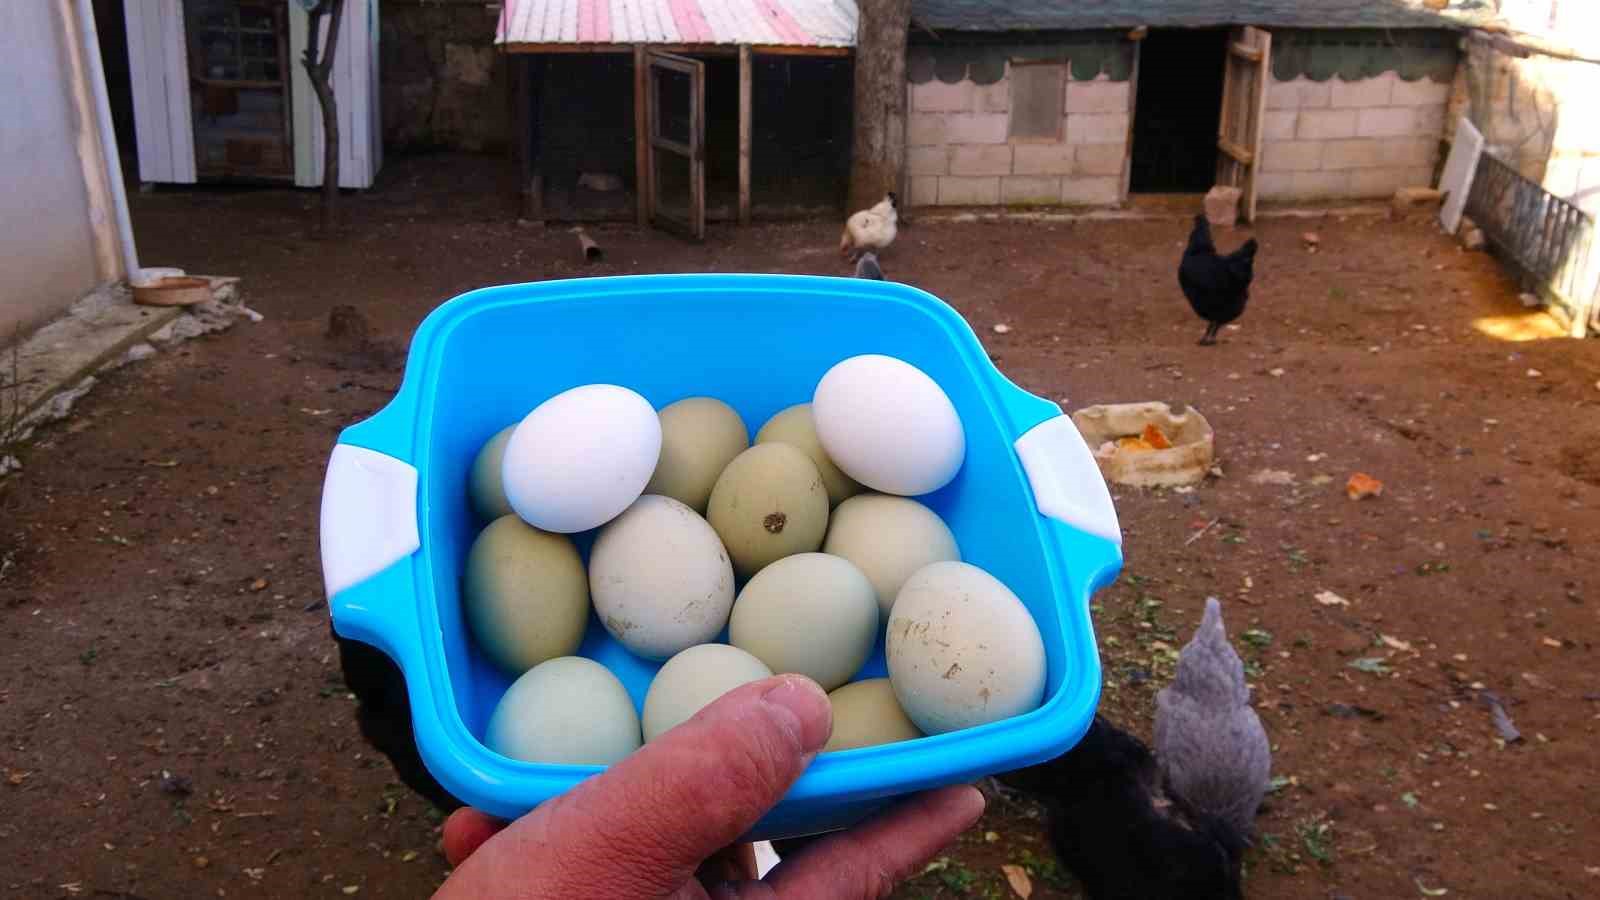 Yeşil renk yumurta veren tavukların yumurtası 20 liradan satılıyor